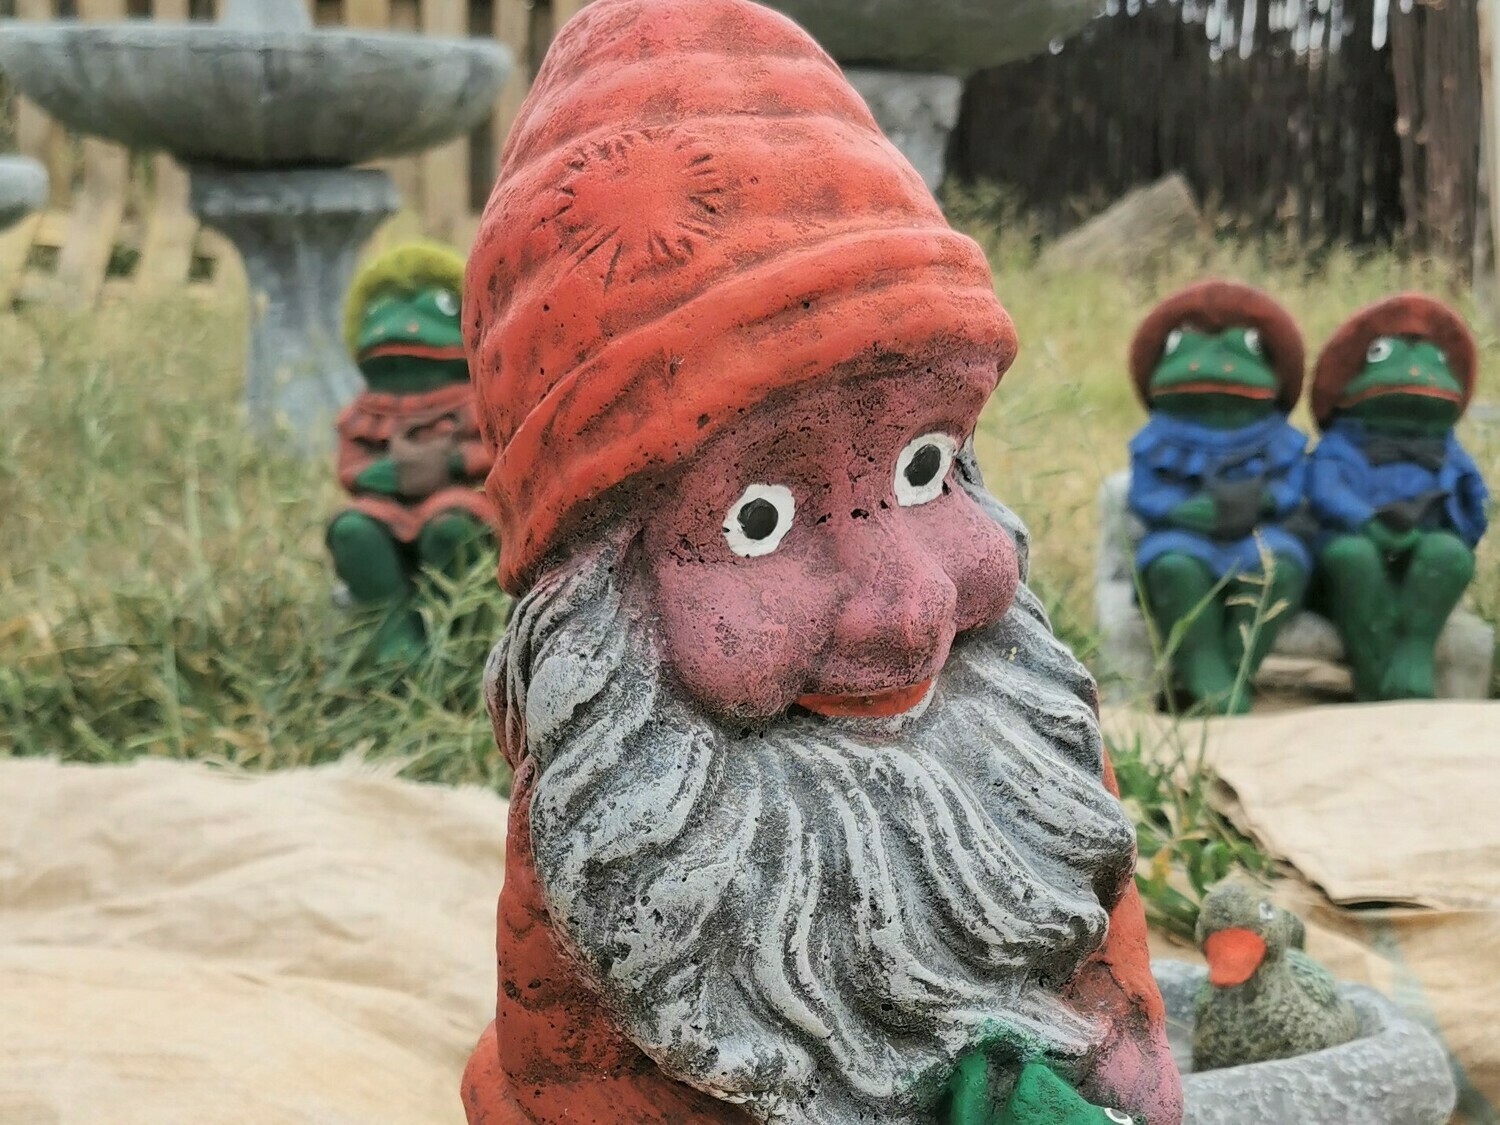 Mr Gnome